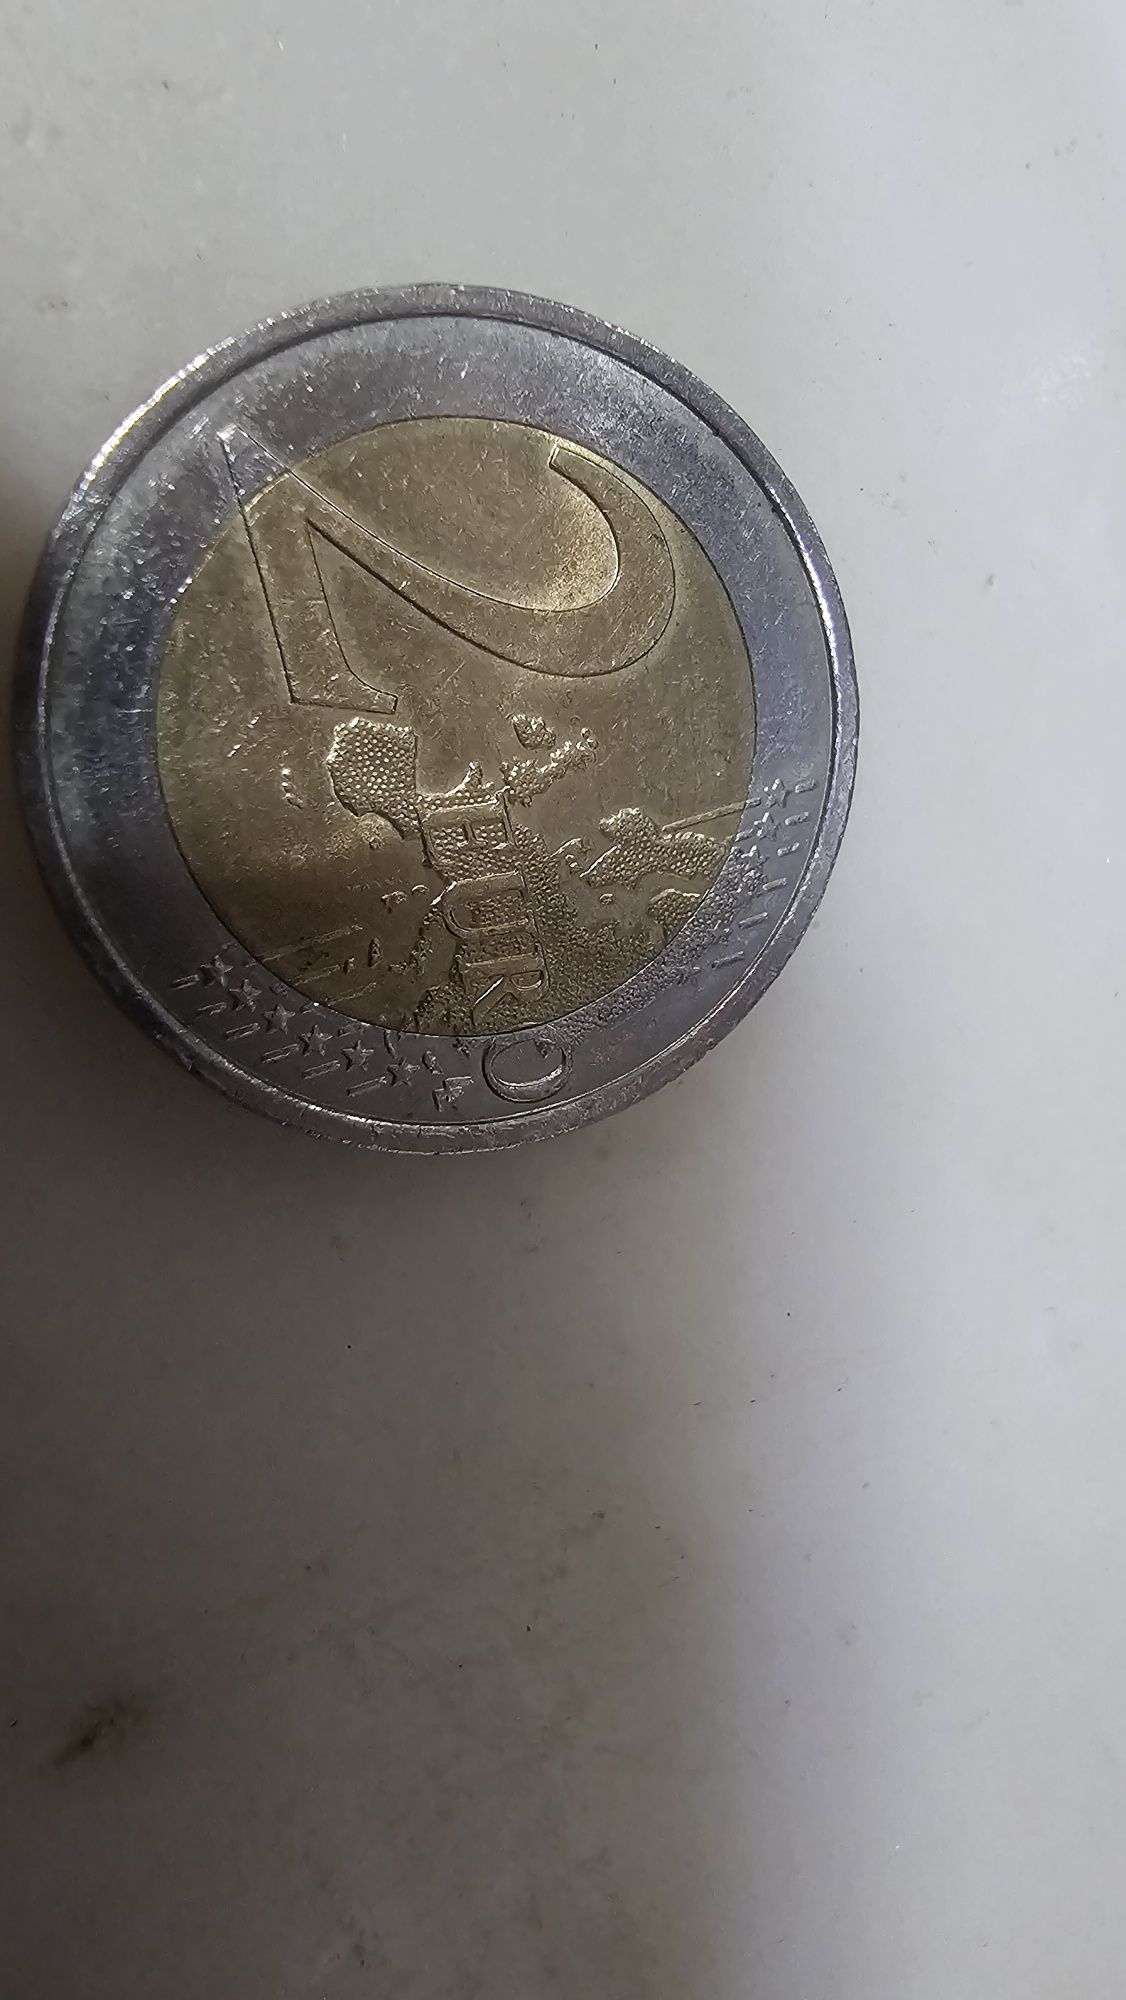 Vendo moeda 2 euros cruz vermelha